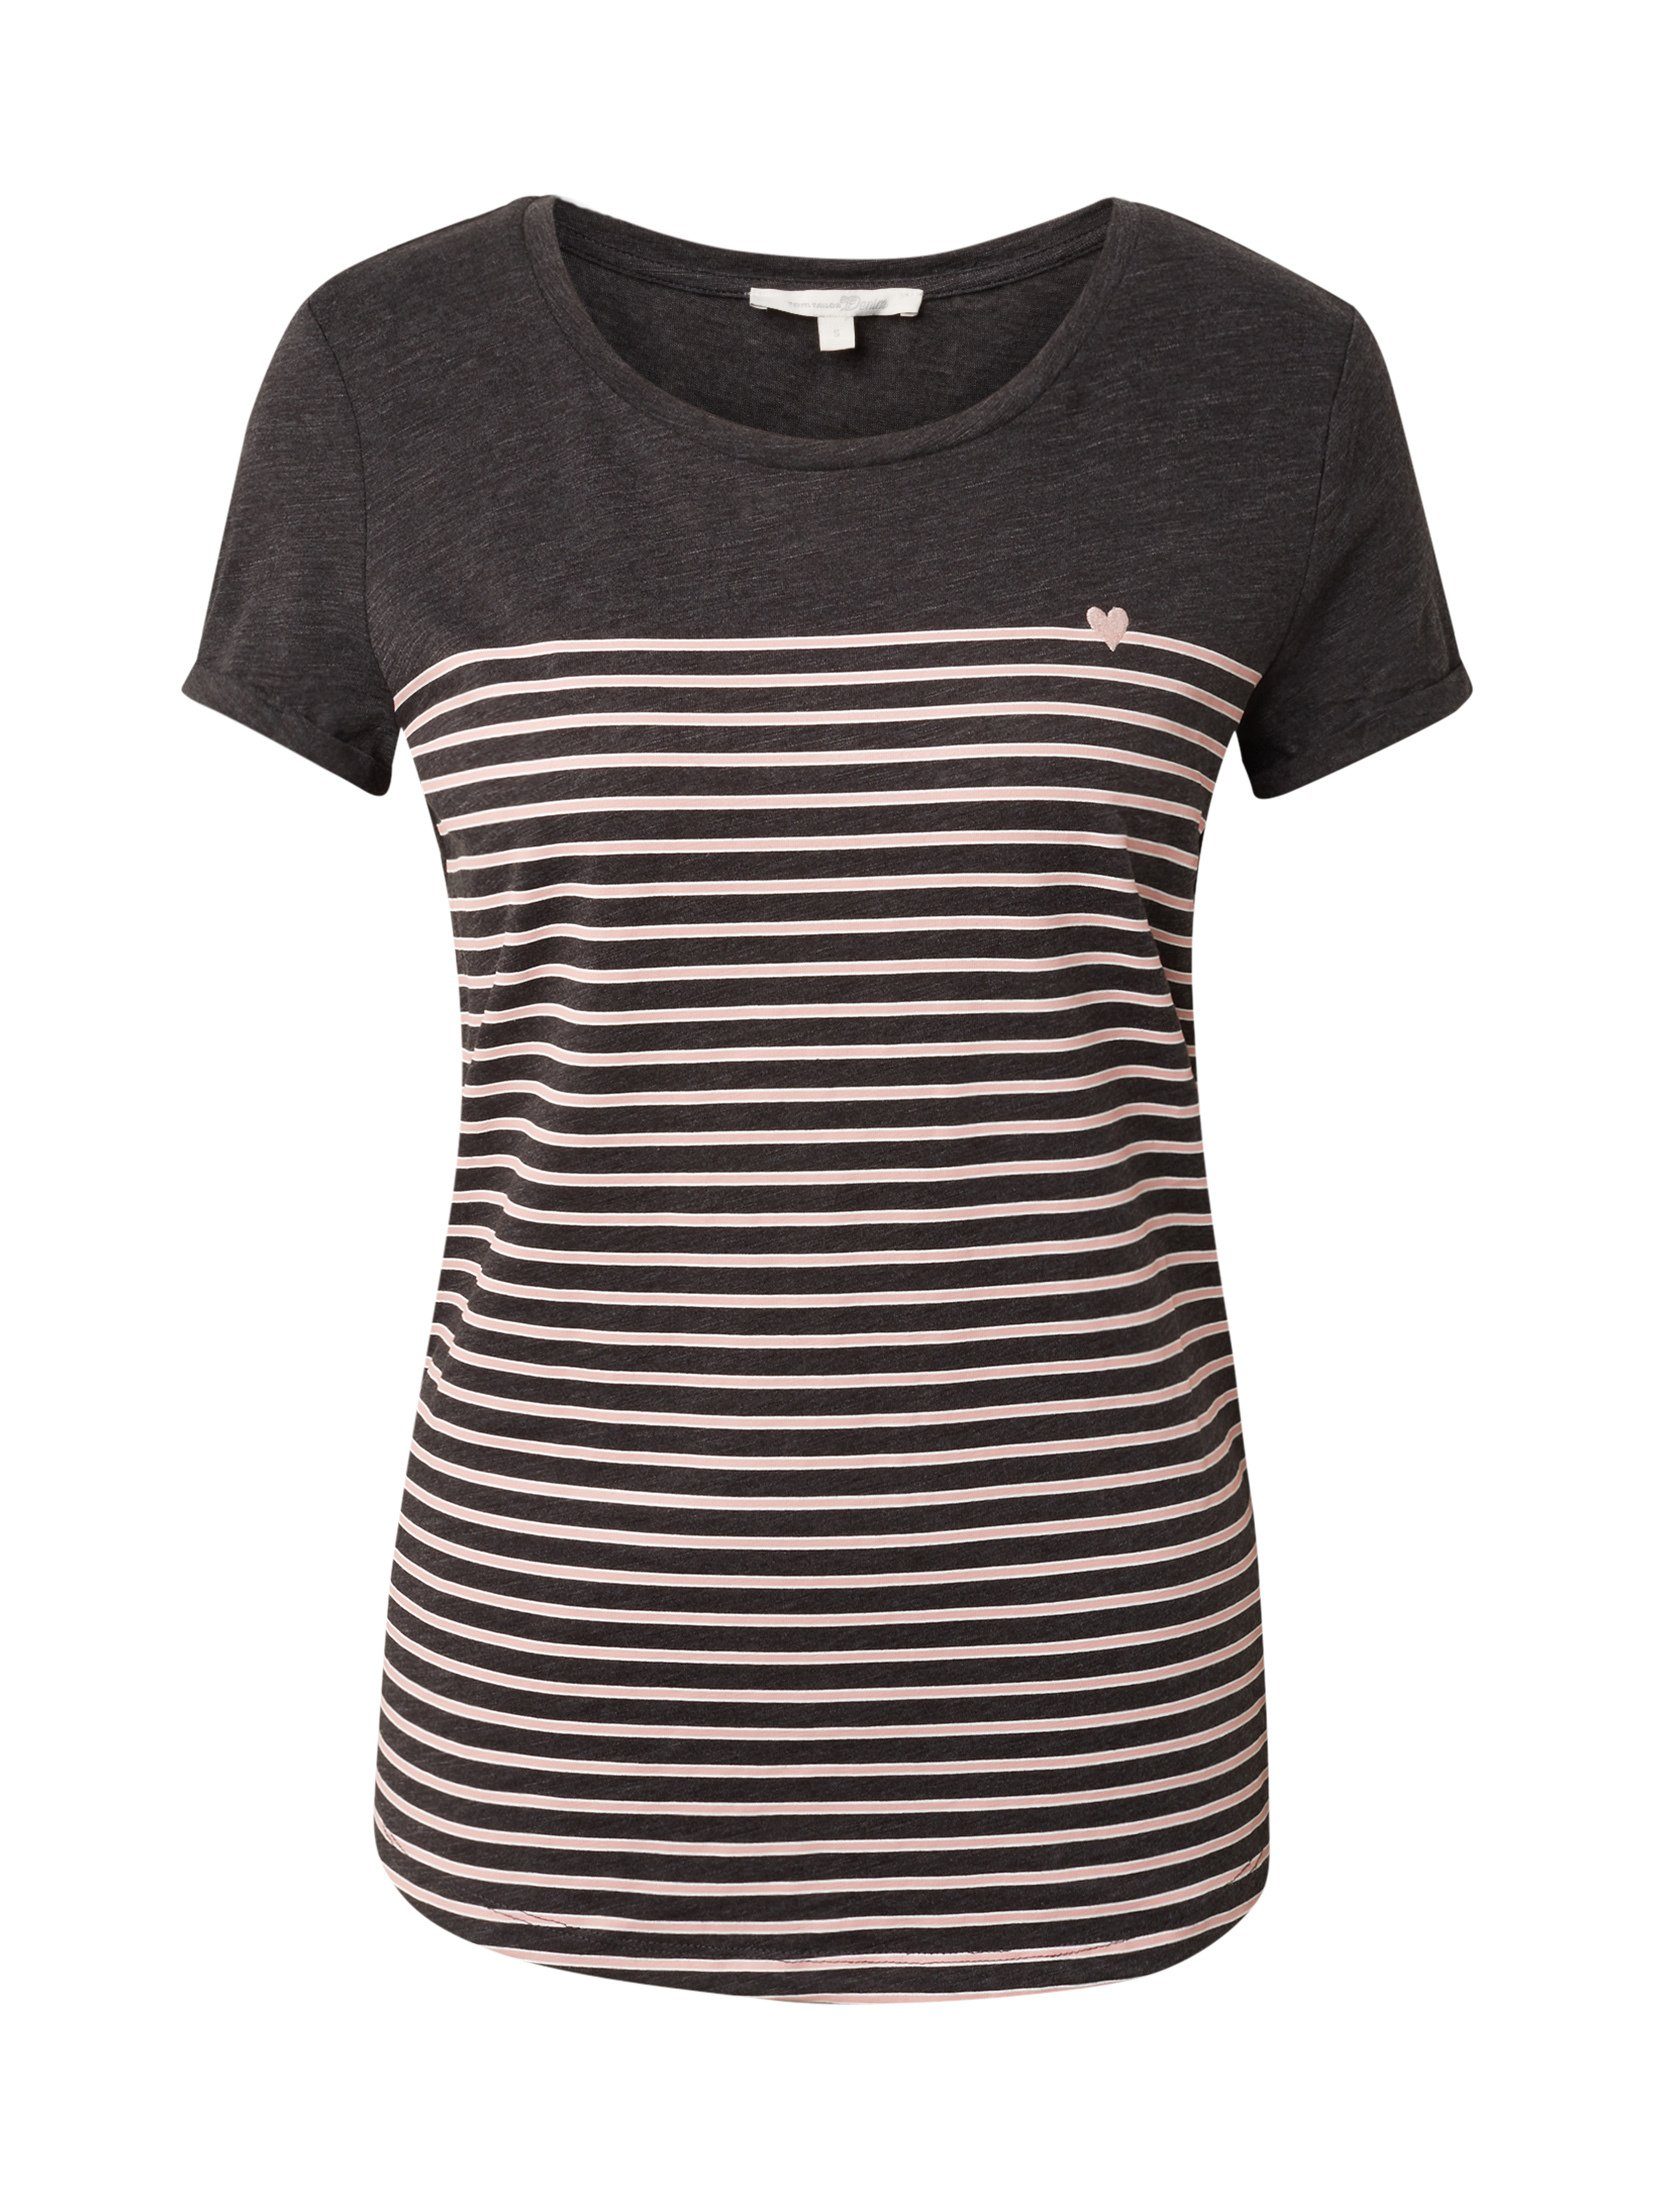 TOM TAILOR Denim dark T-Shirt rose Gestreiftes grey Langarmshirt stripe